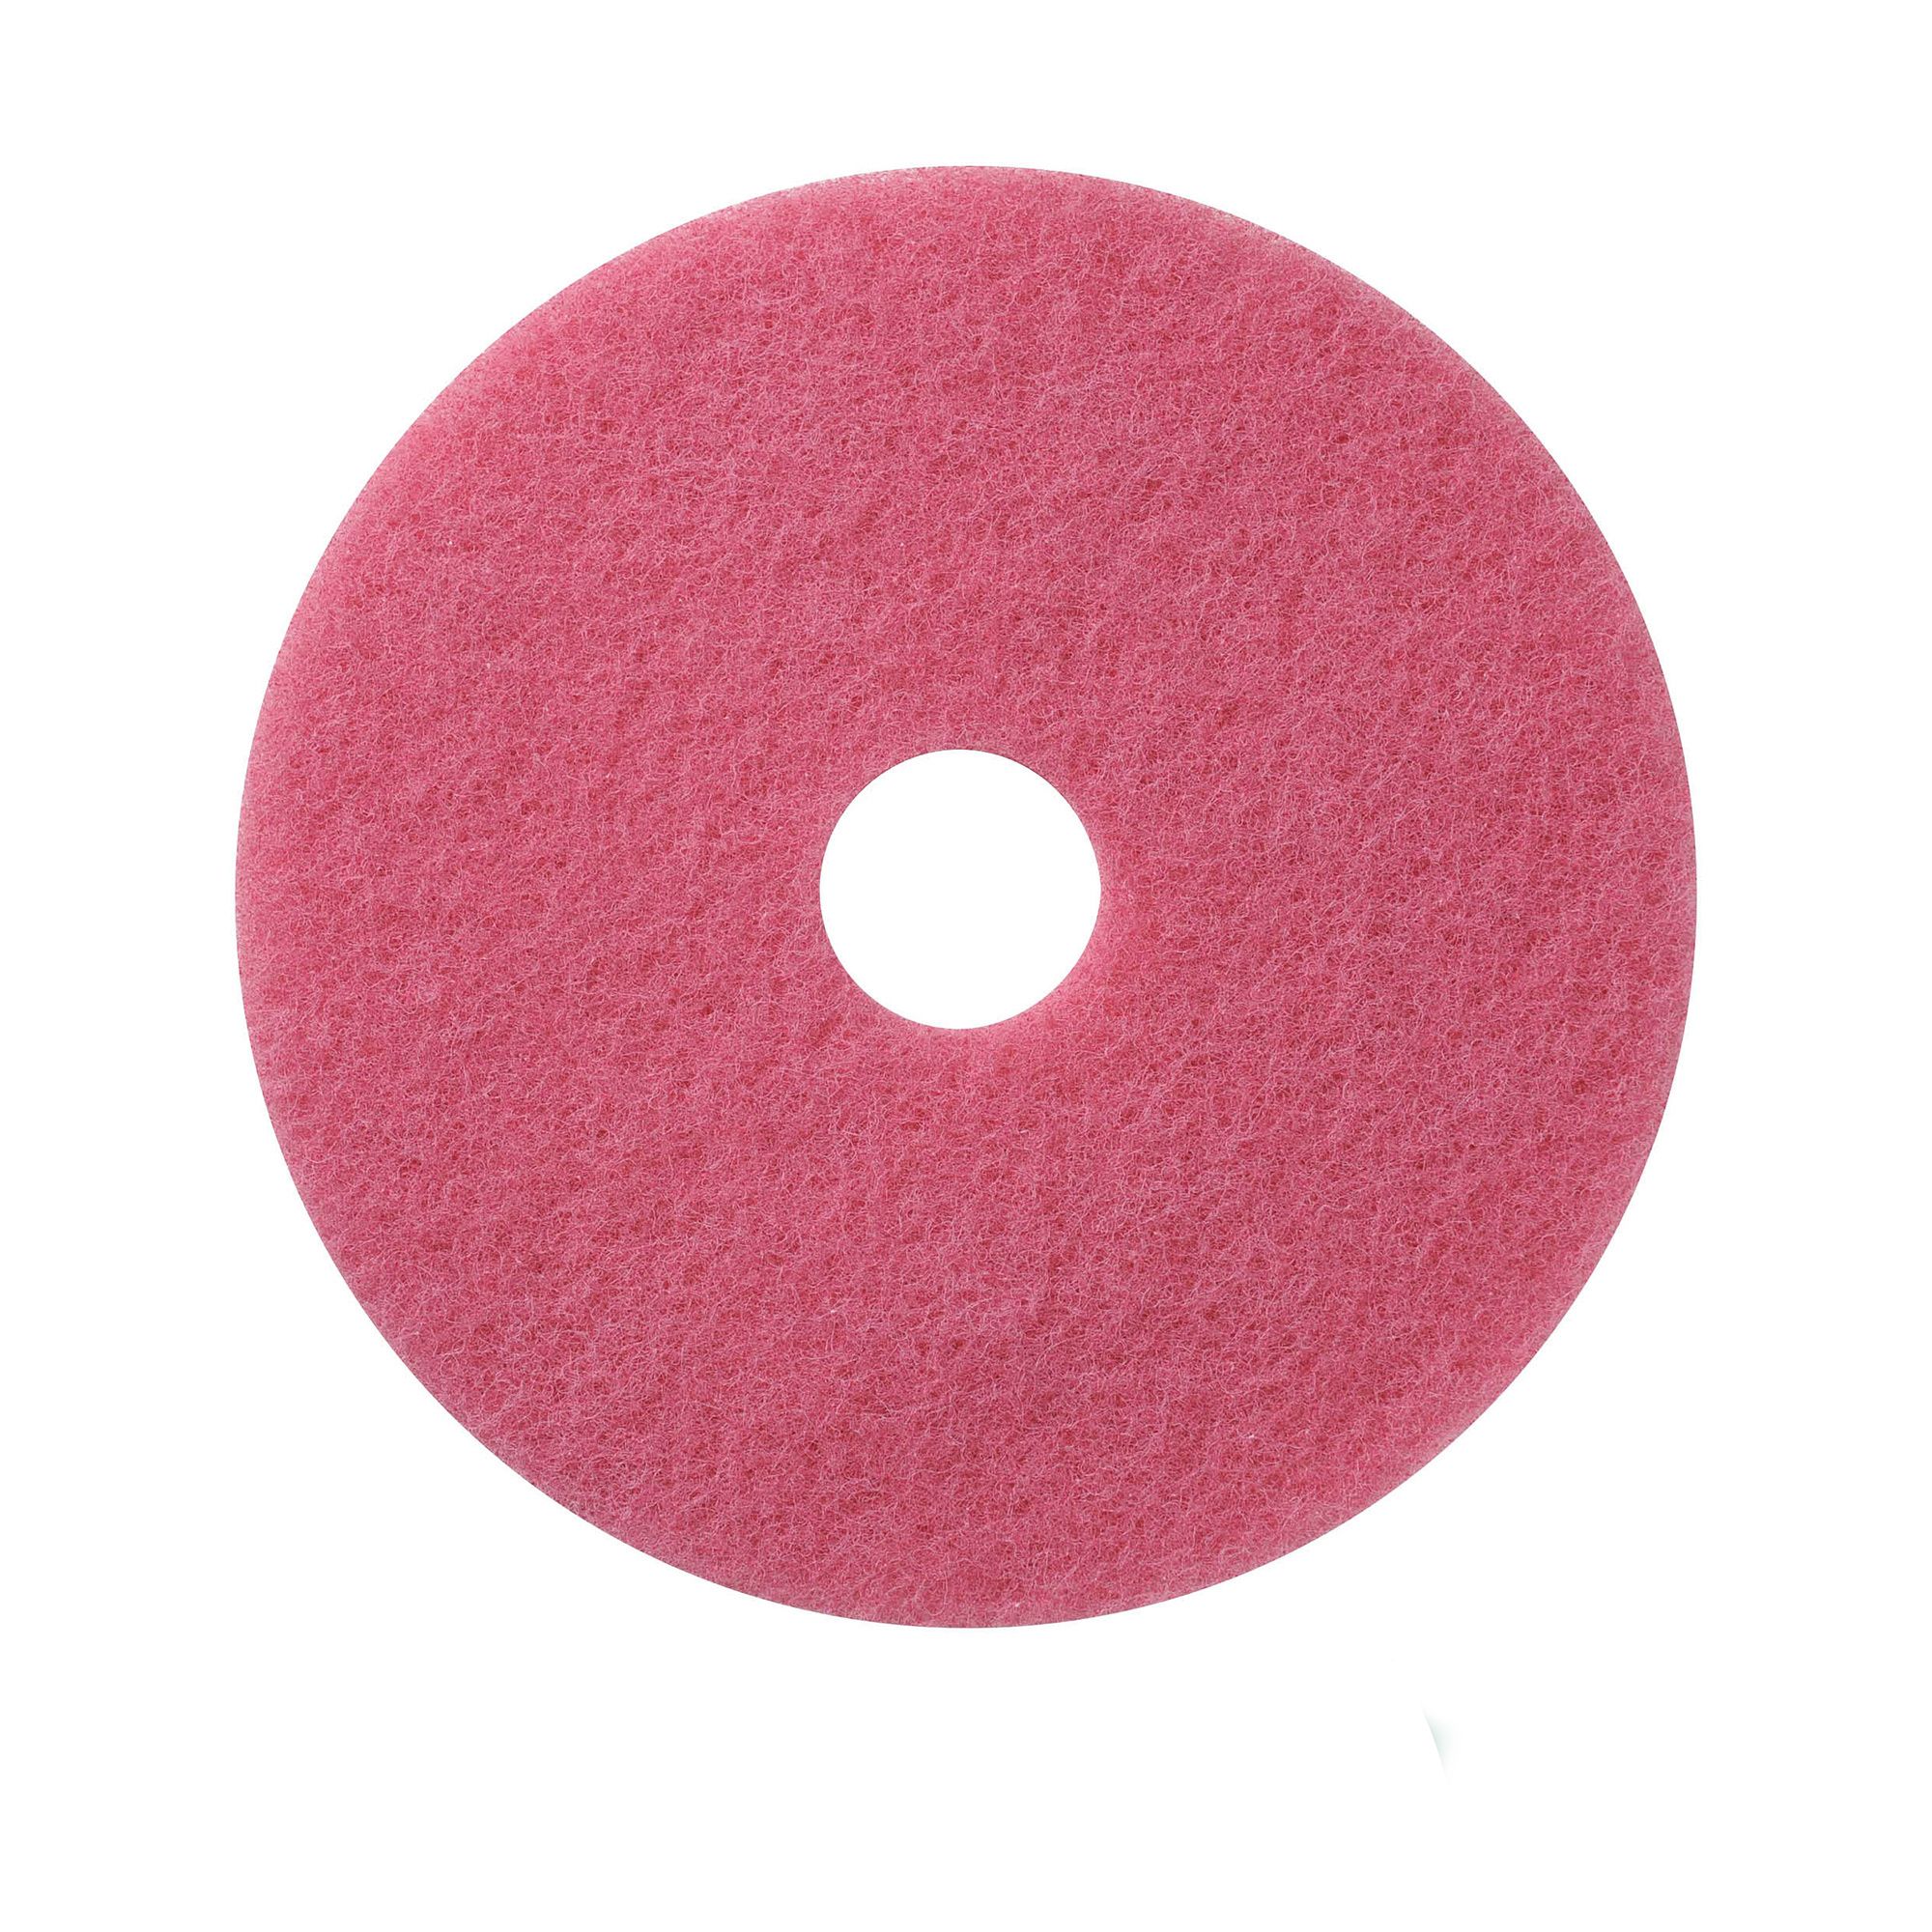 NuPad roze (schrobben), per 5 stuks, 17 inch / 432 mm